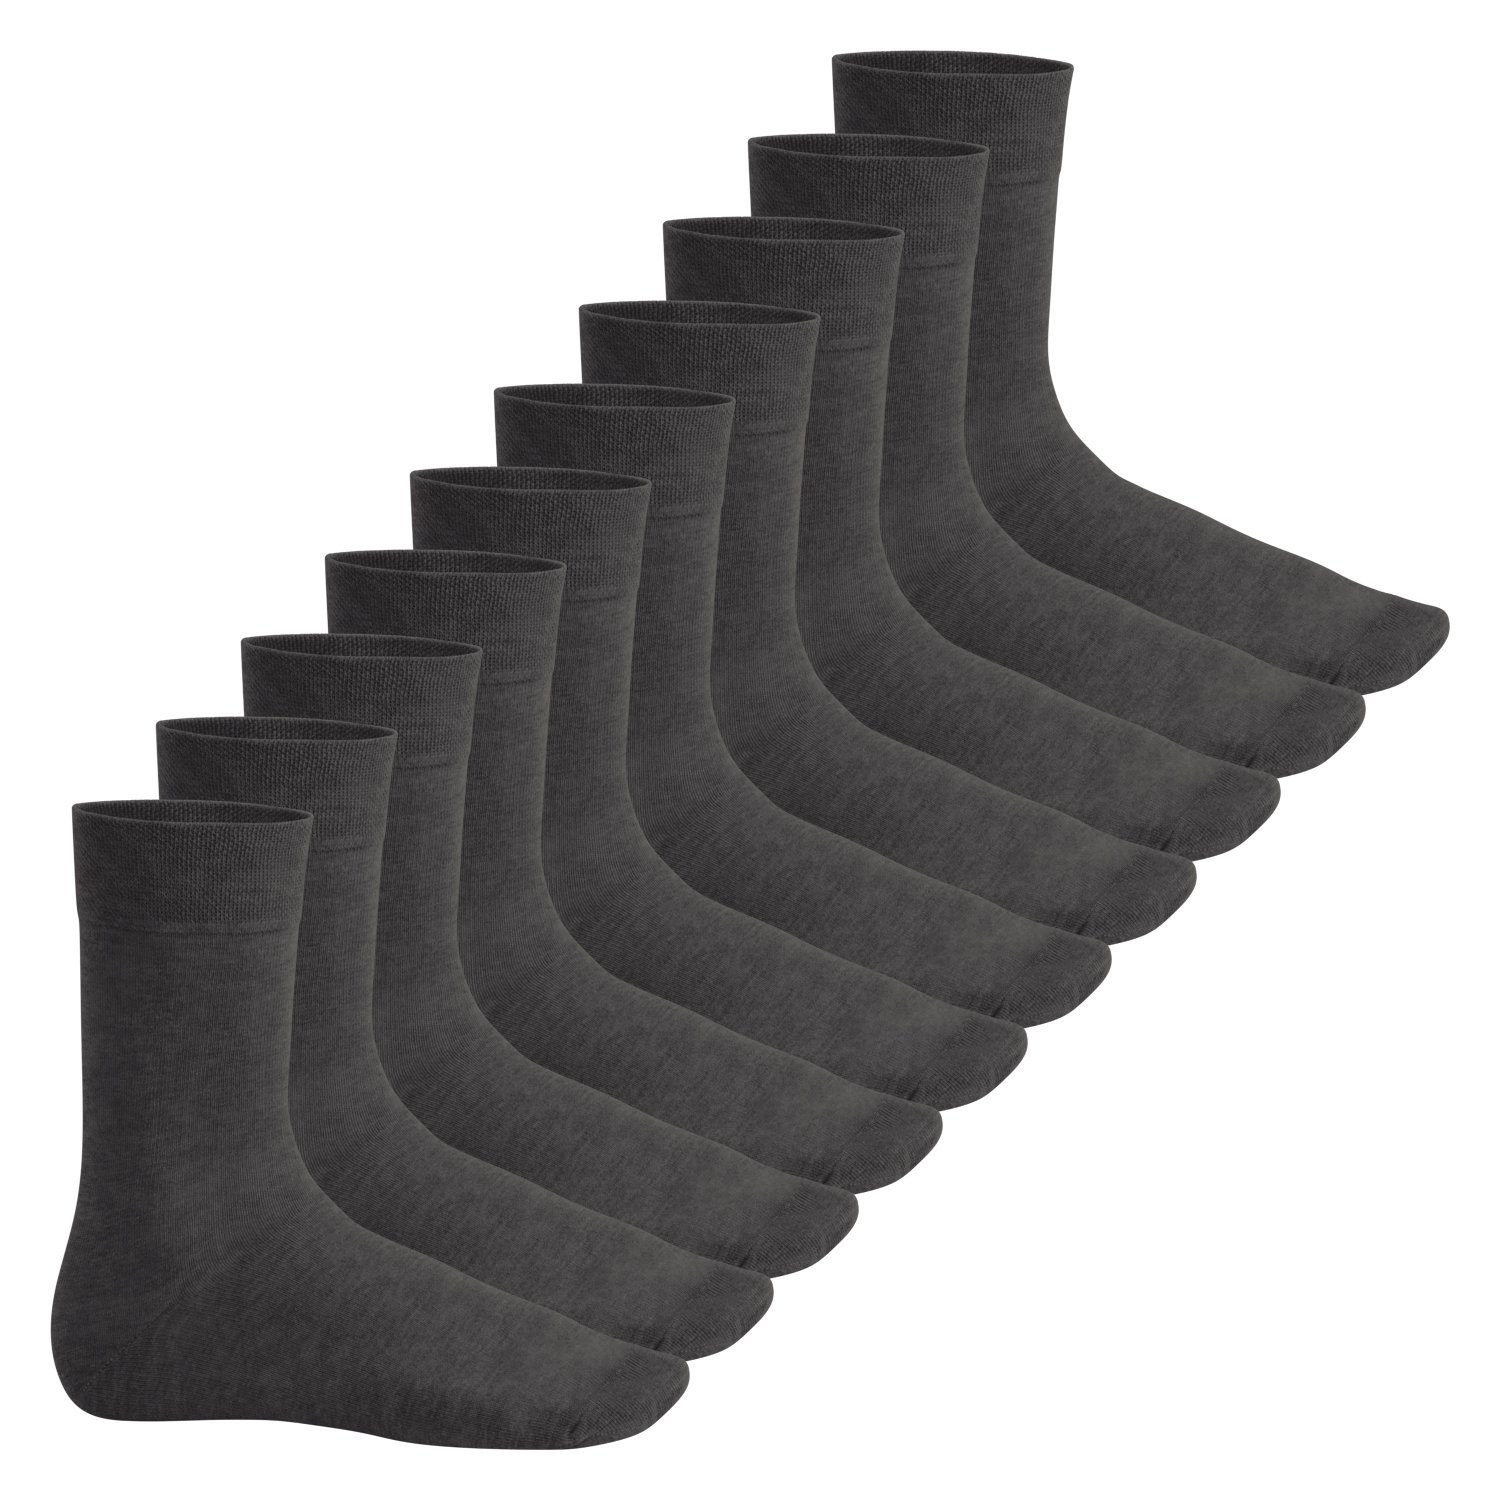 Footstar Basicsocken Everyday! Herren & Damen Socken (10 Paar) mit Baumwolle Anthrazit